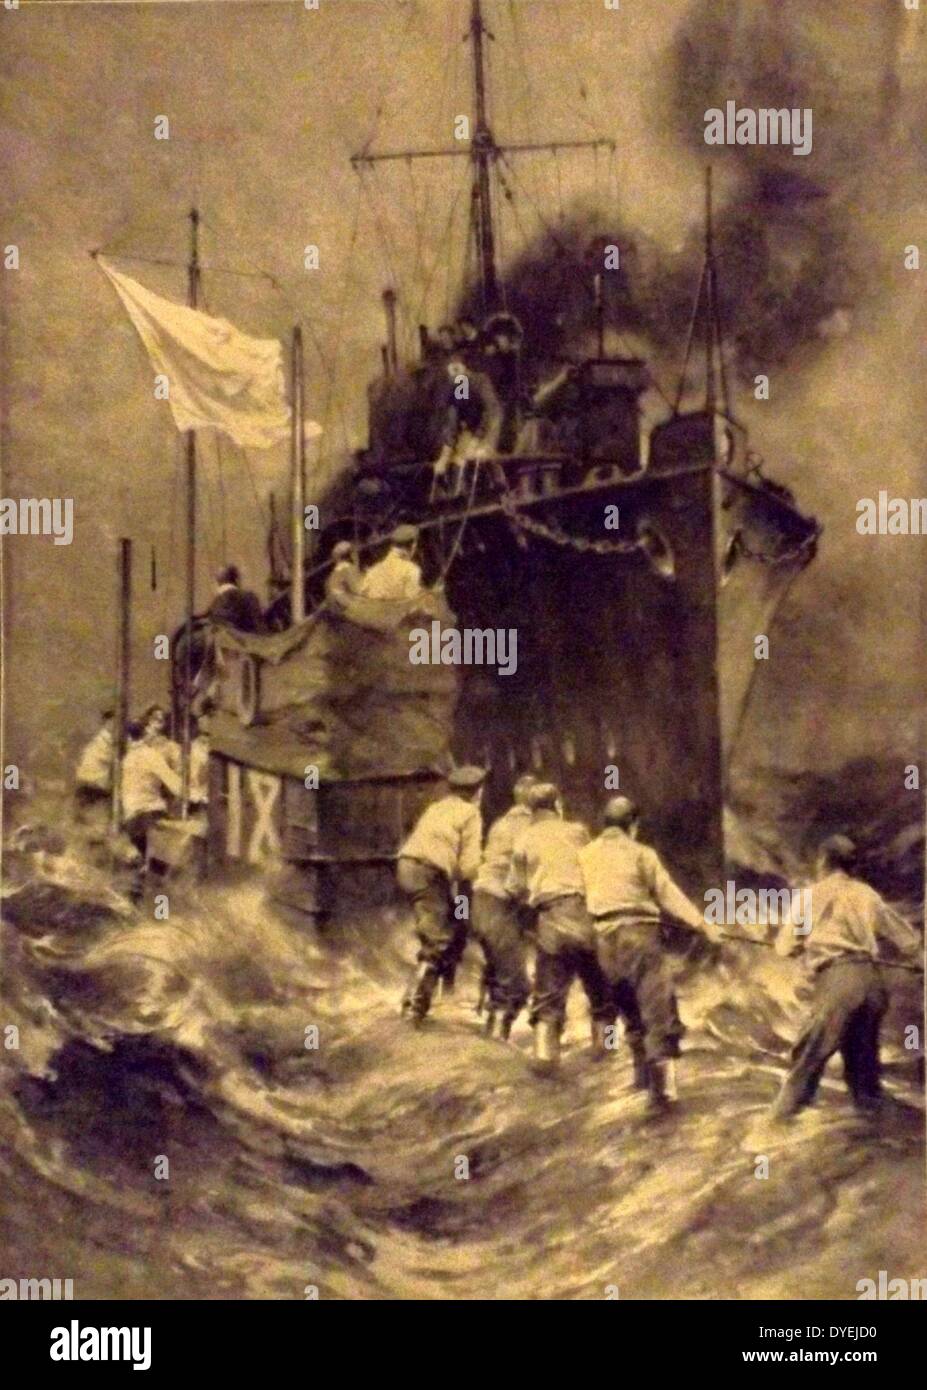 La Première Guerre mondiale . 1914, les forces britanniques arrivent à sauver l'équipage d'un sous-marin allemand U-boot endommagé au large de la côte de l'Écosse en novembre 1914. Port belge d'Anvers Banque D'Images